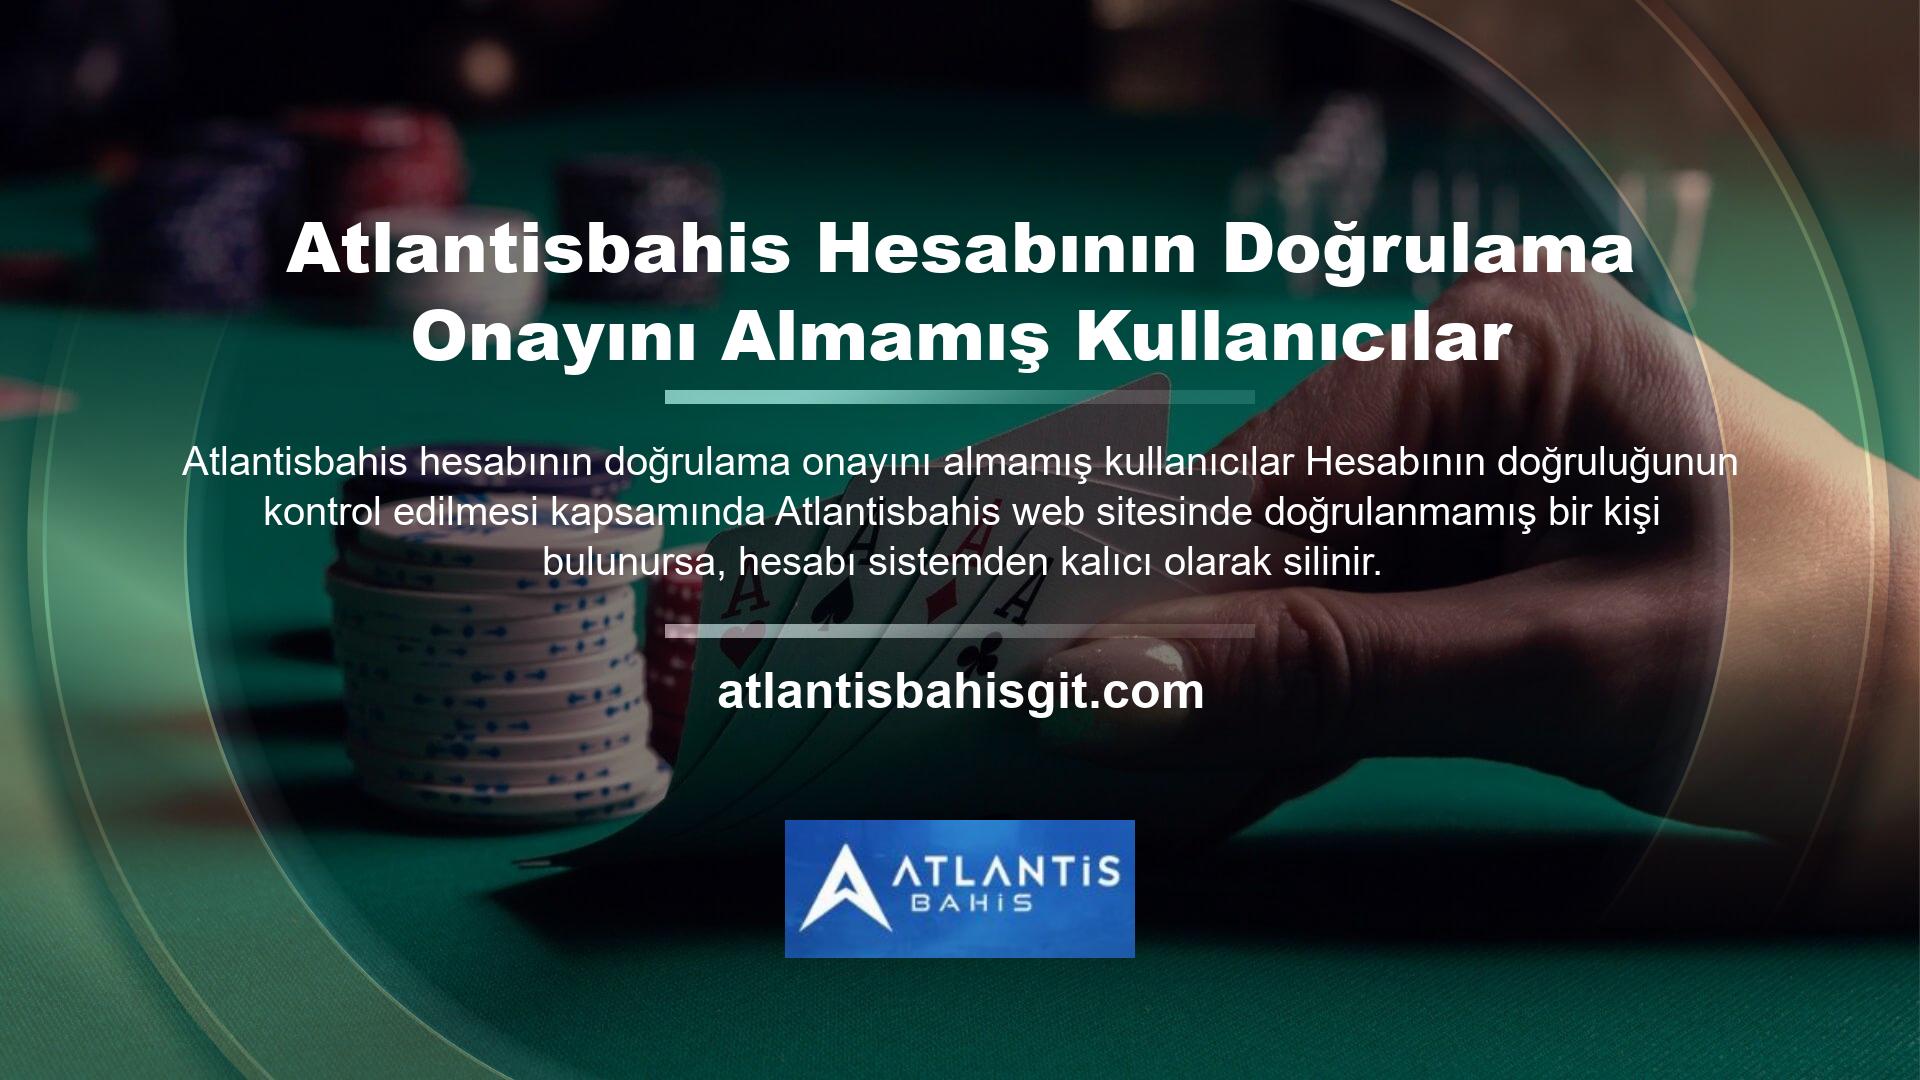 Atlantisbahis Hesabının Doğrulama Onayını Almamış Kullanıcılar